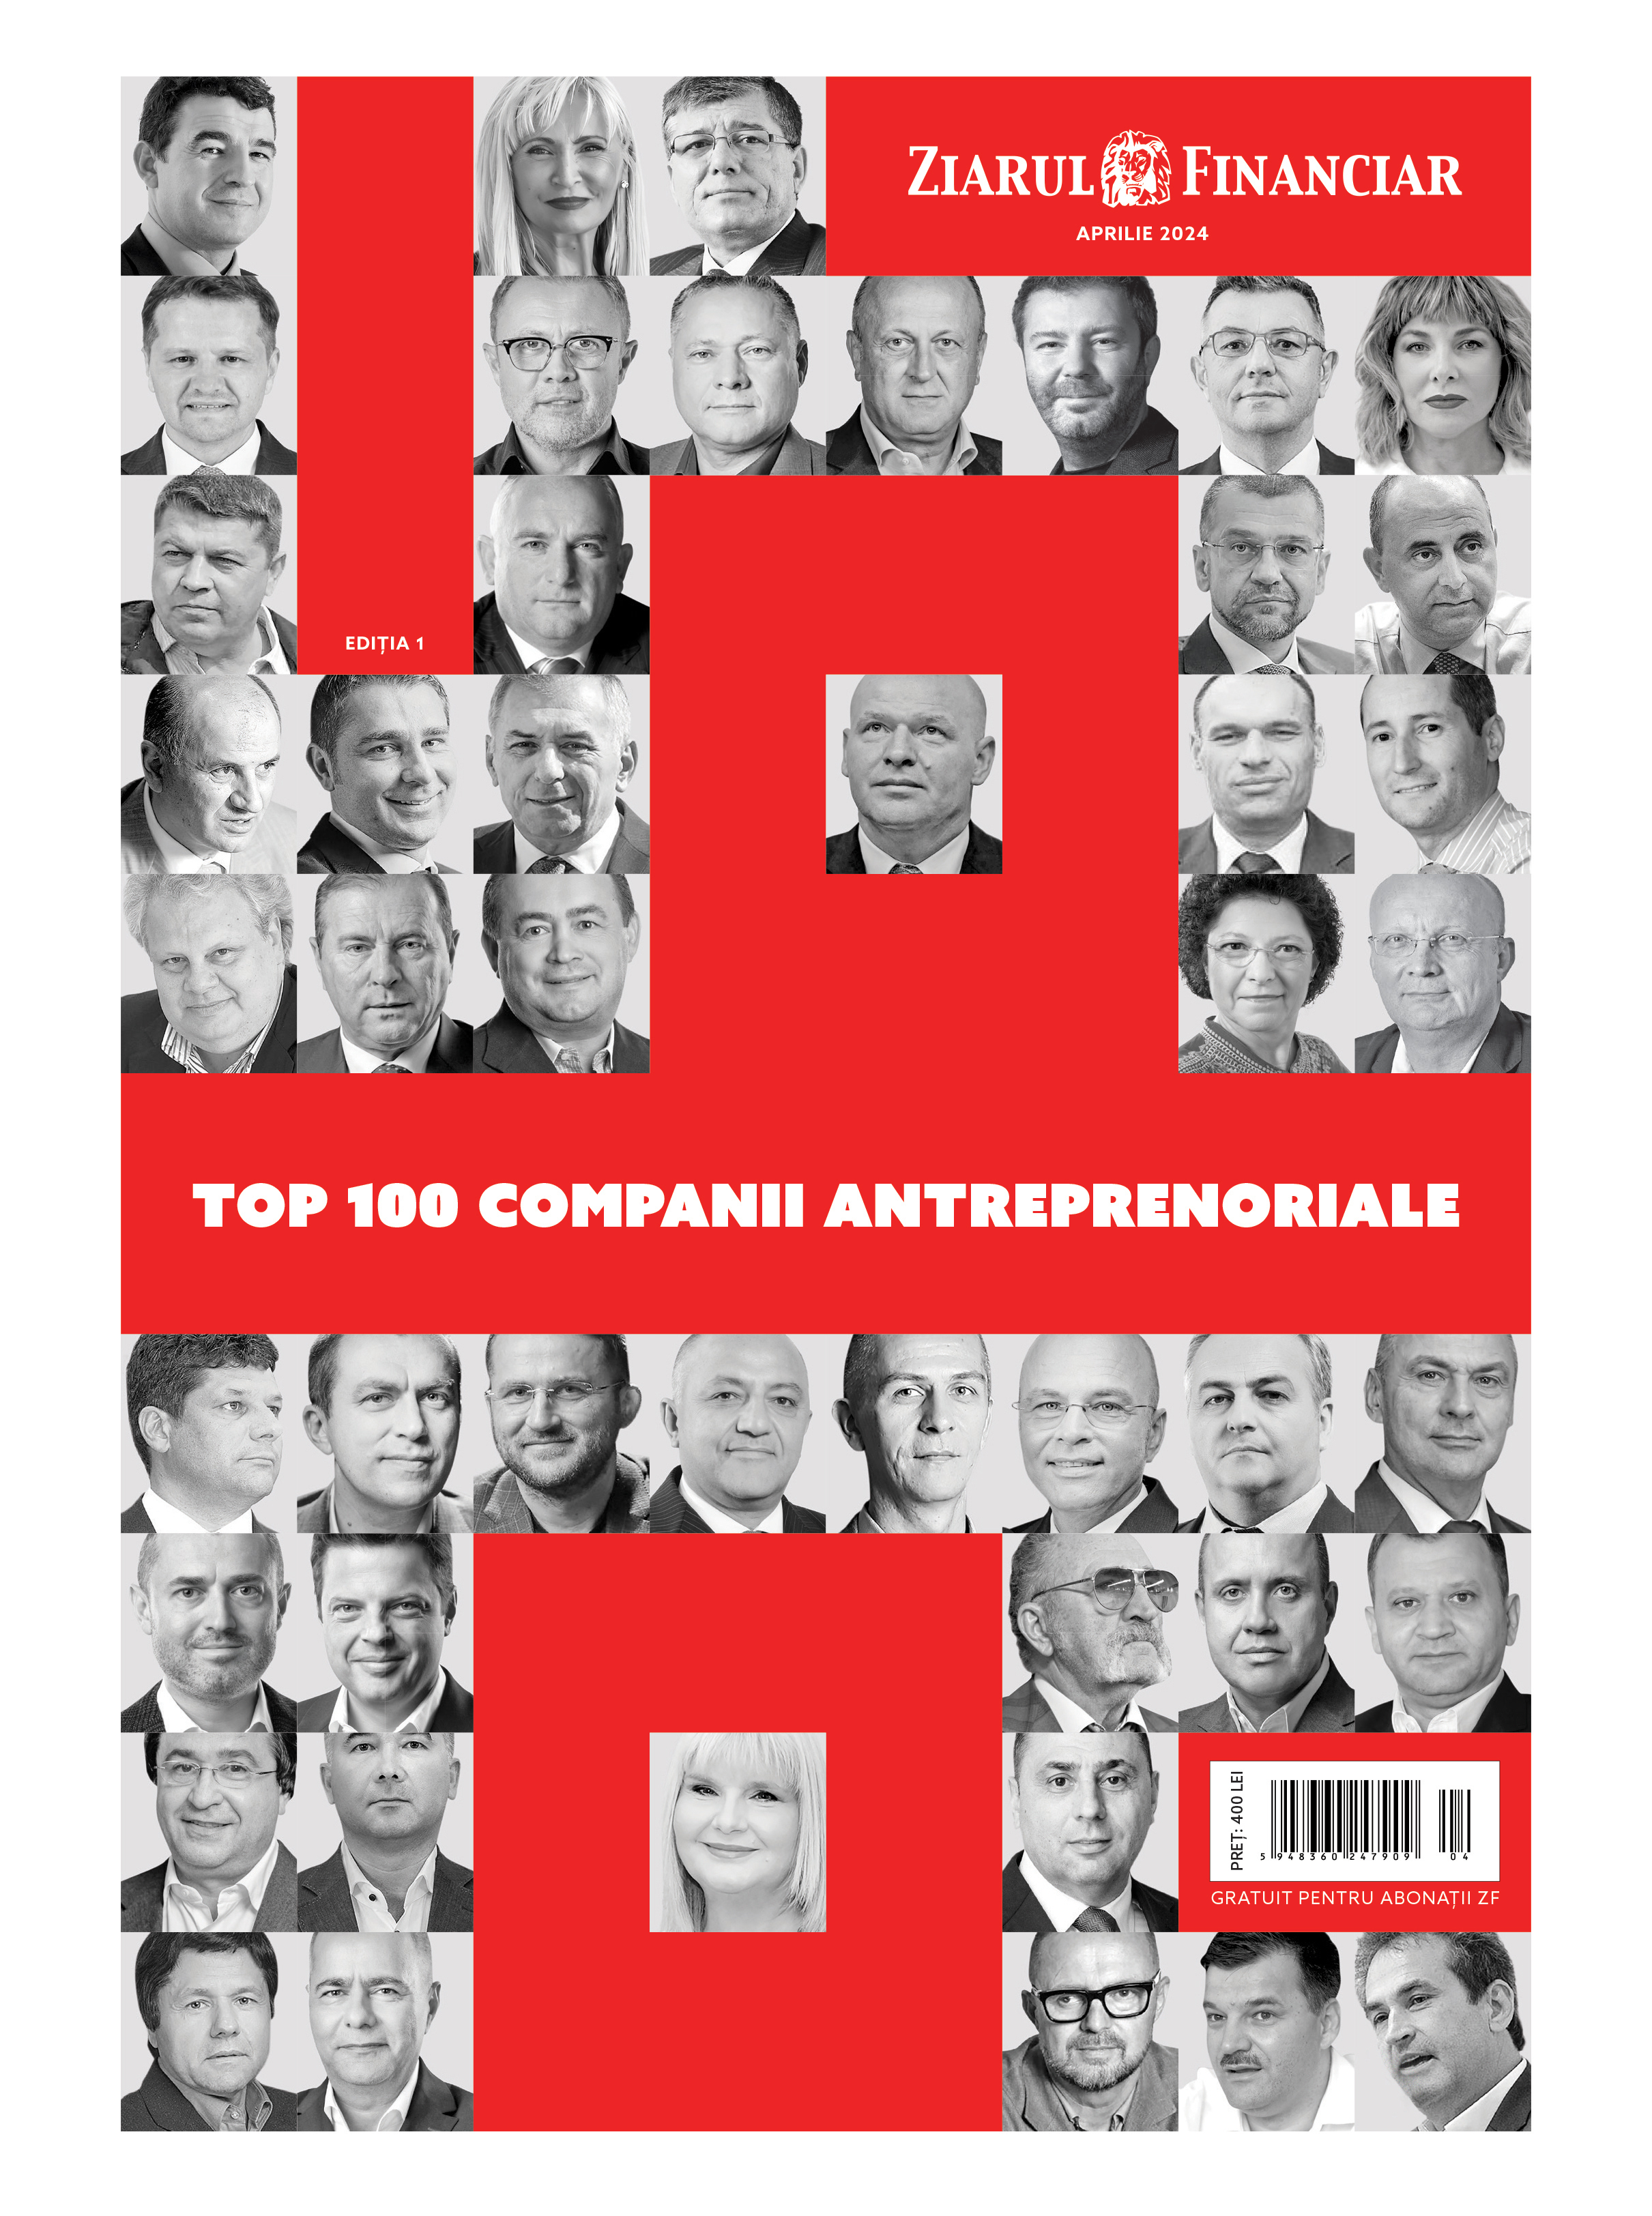 Ziarul Financiar lansează prima ediţie a Top 100 companii antreprenoriale româneşti